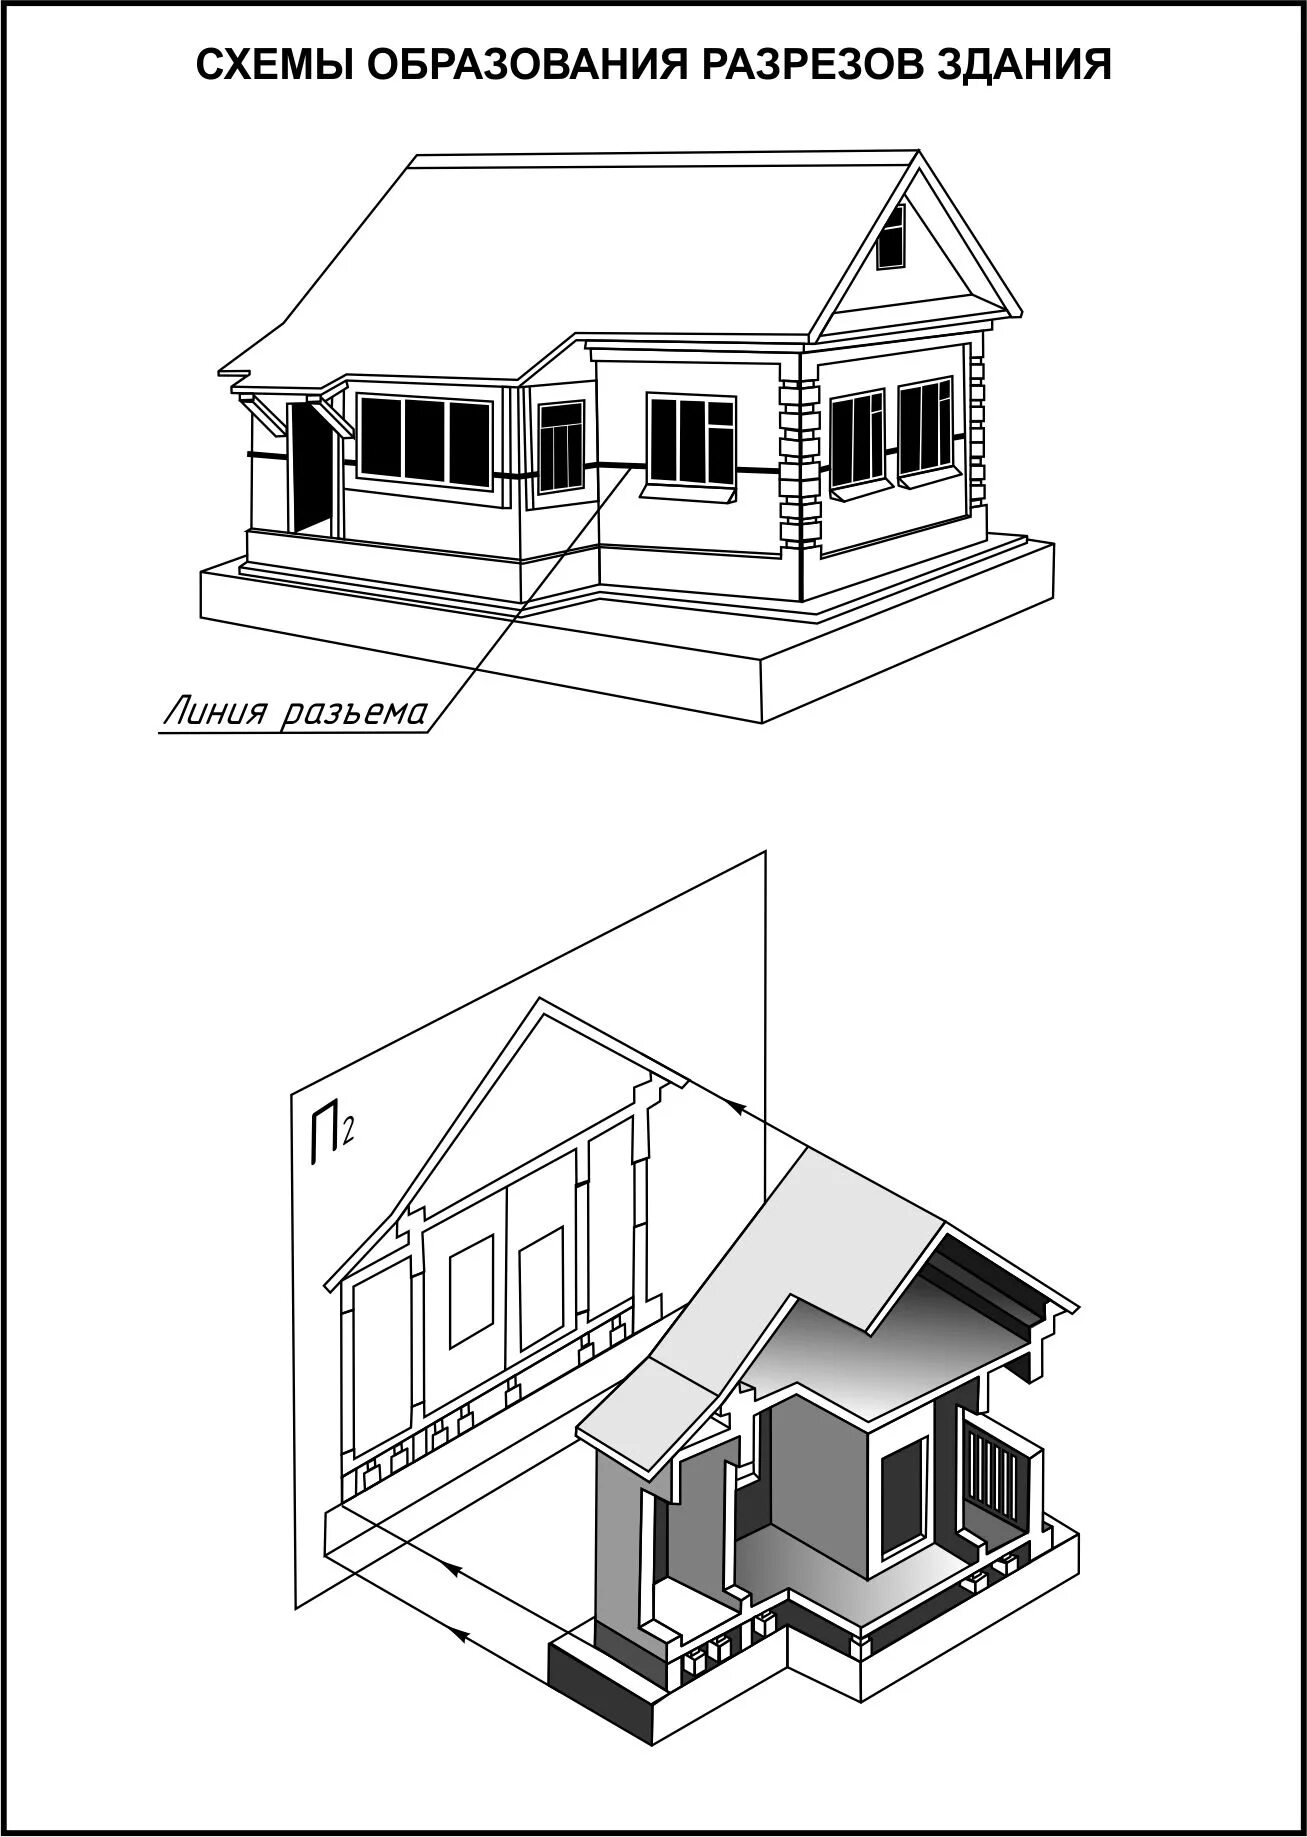 Картинка схема дома. Задания по строительному черчению. Разрез фасада здания. Черчение дом. Чертеж дома в проекциях.